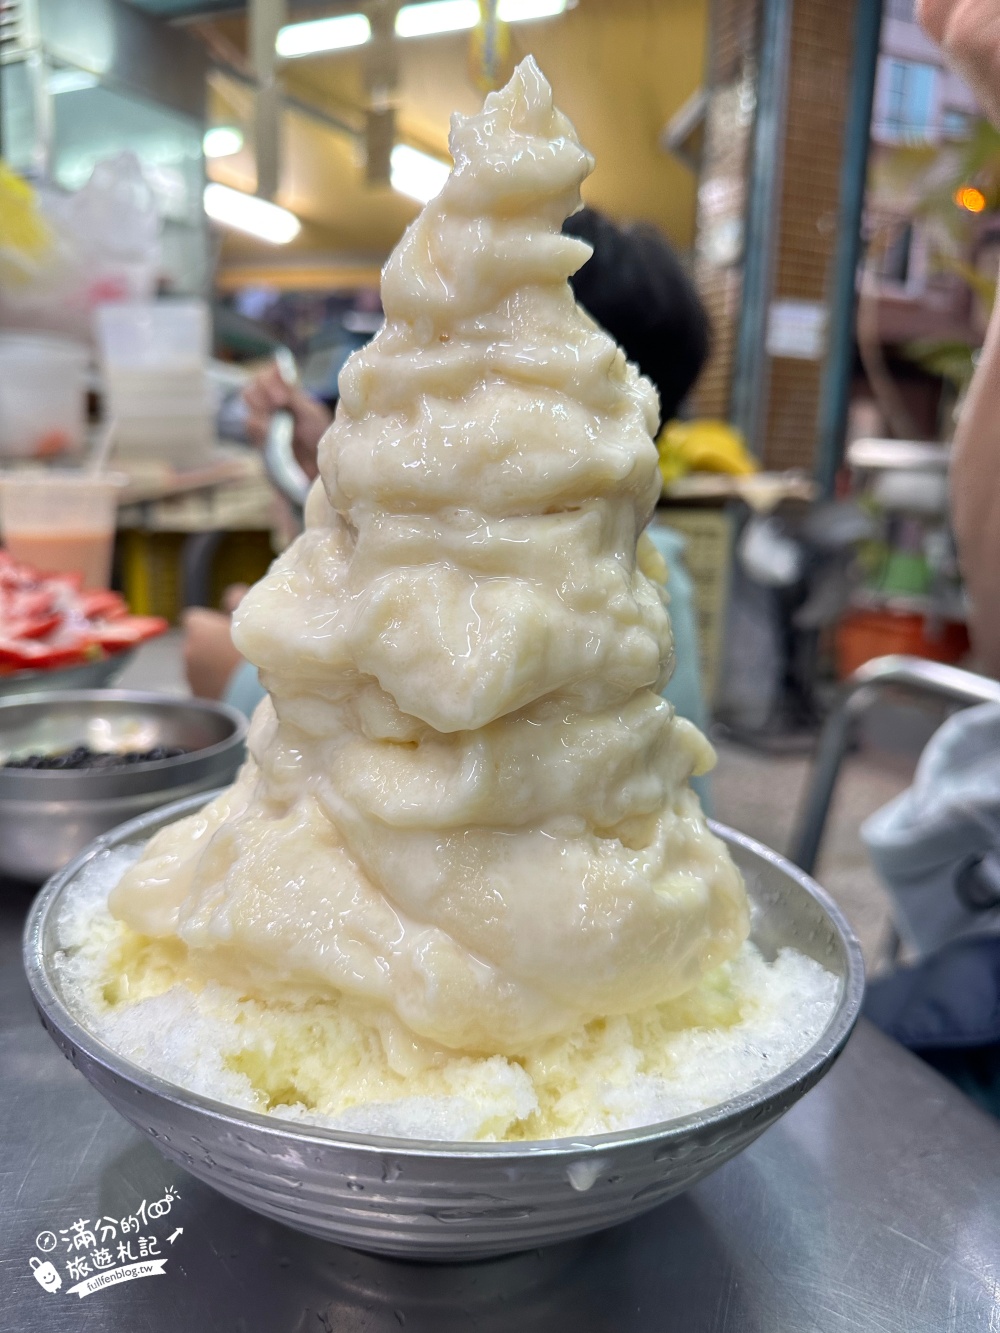 屏東美食【秋林牛奶大王】冰品界的101,浮誇系水果布丁剉冰好吃耶!